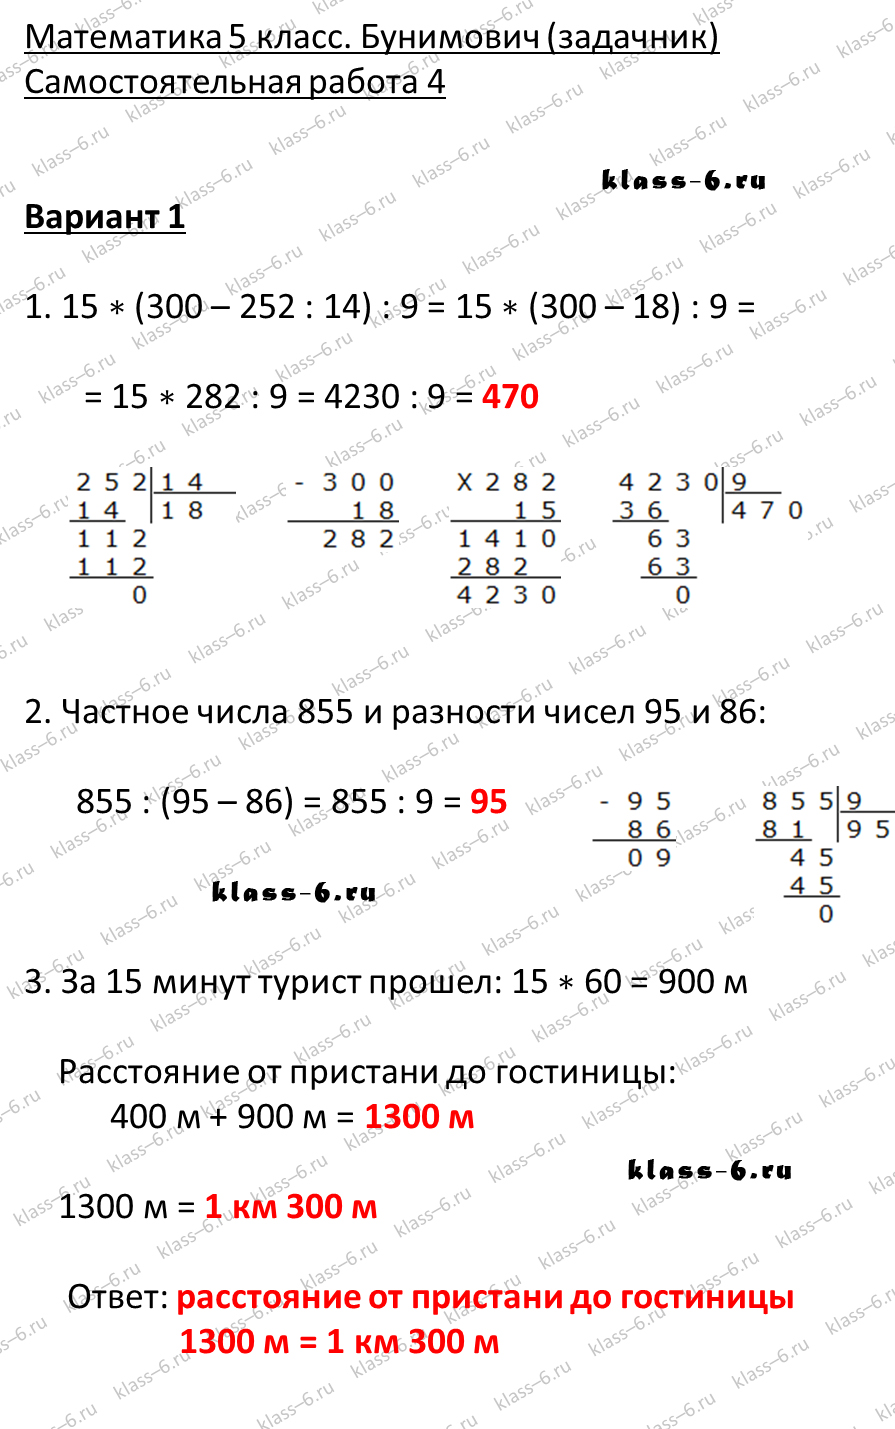 решебник и гдз по математике задачник Бунимович 5 класс самостоятельная работа 4-v1